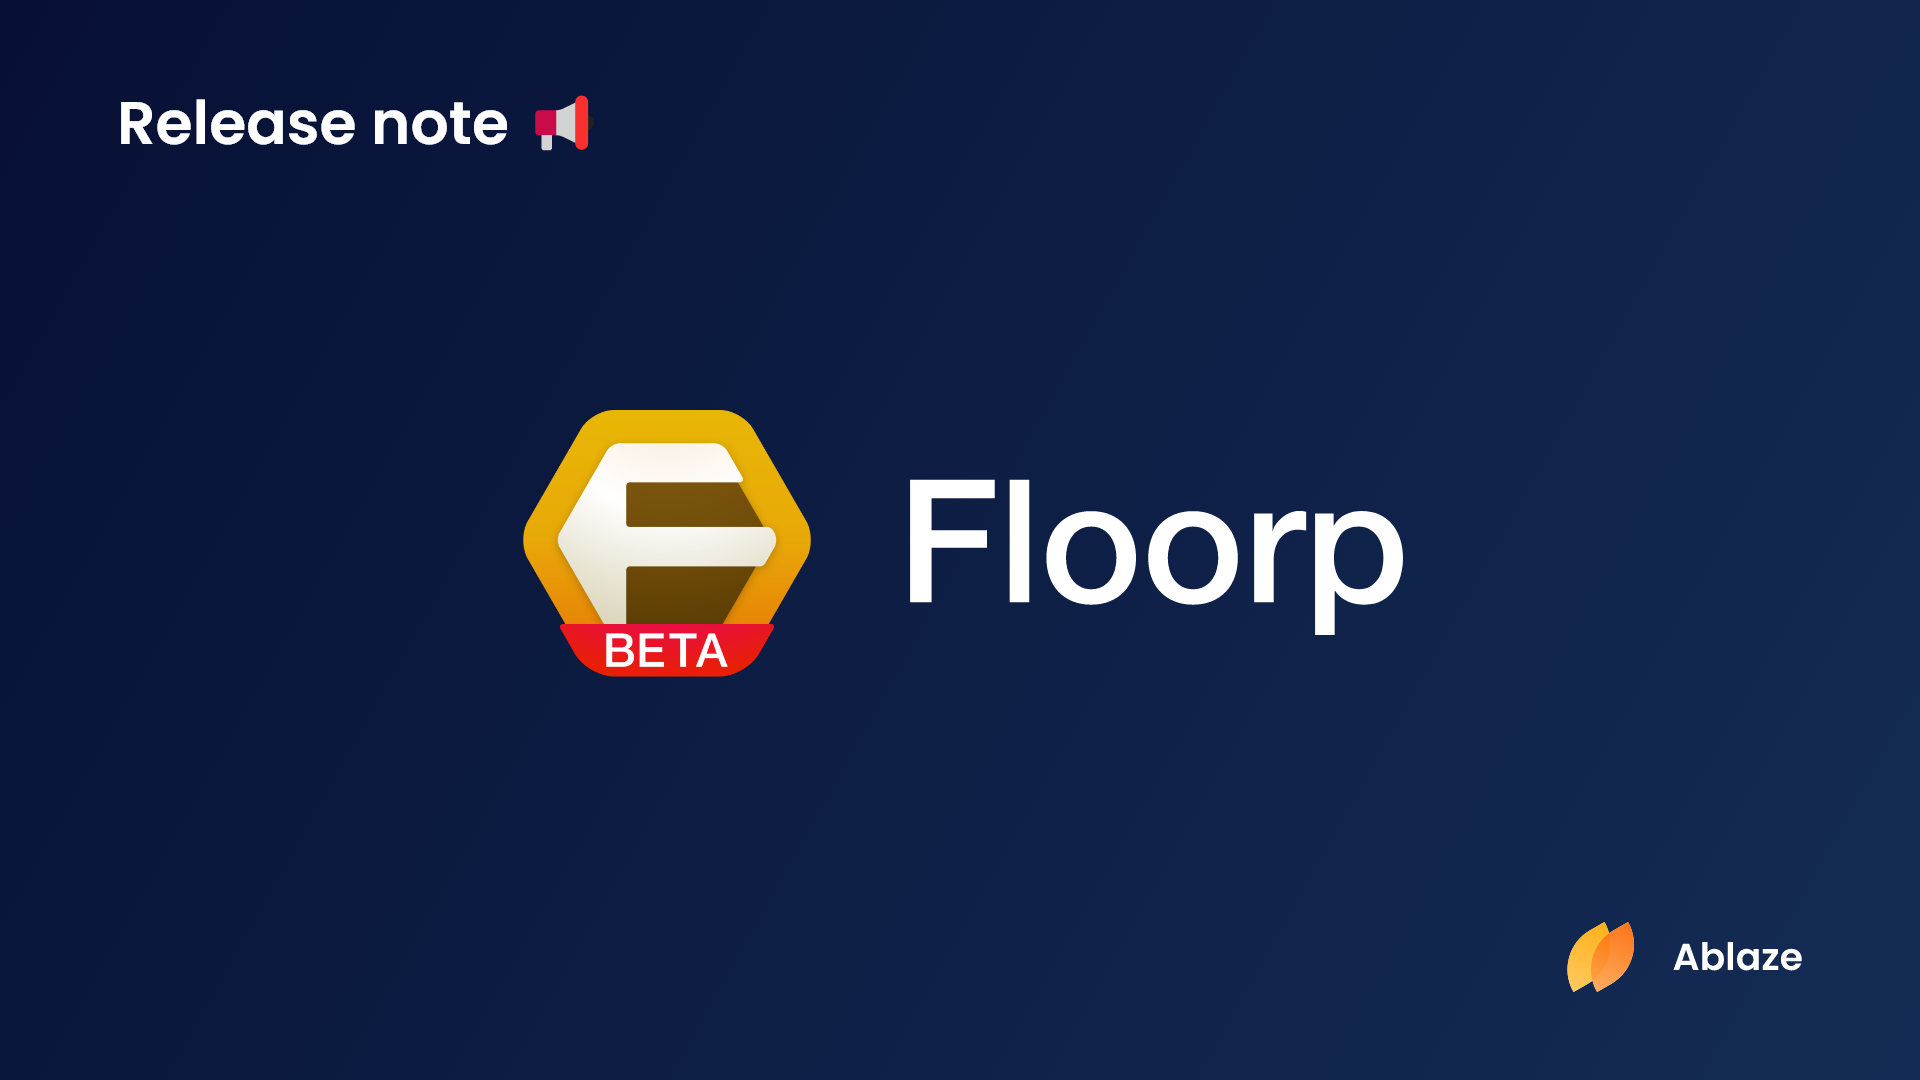 Floorp ブラウザー | バージョン 10.7.0 リリース候補